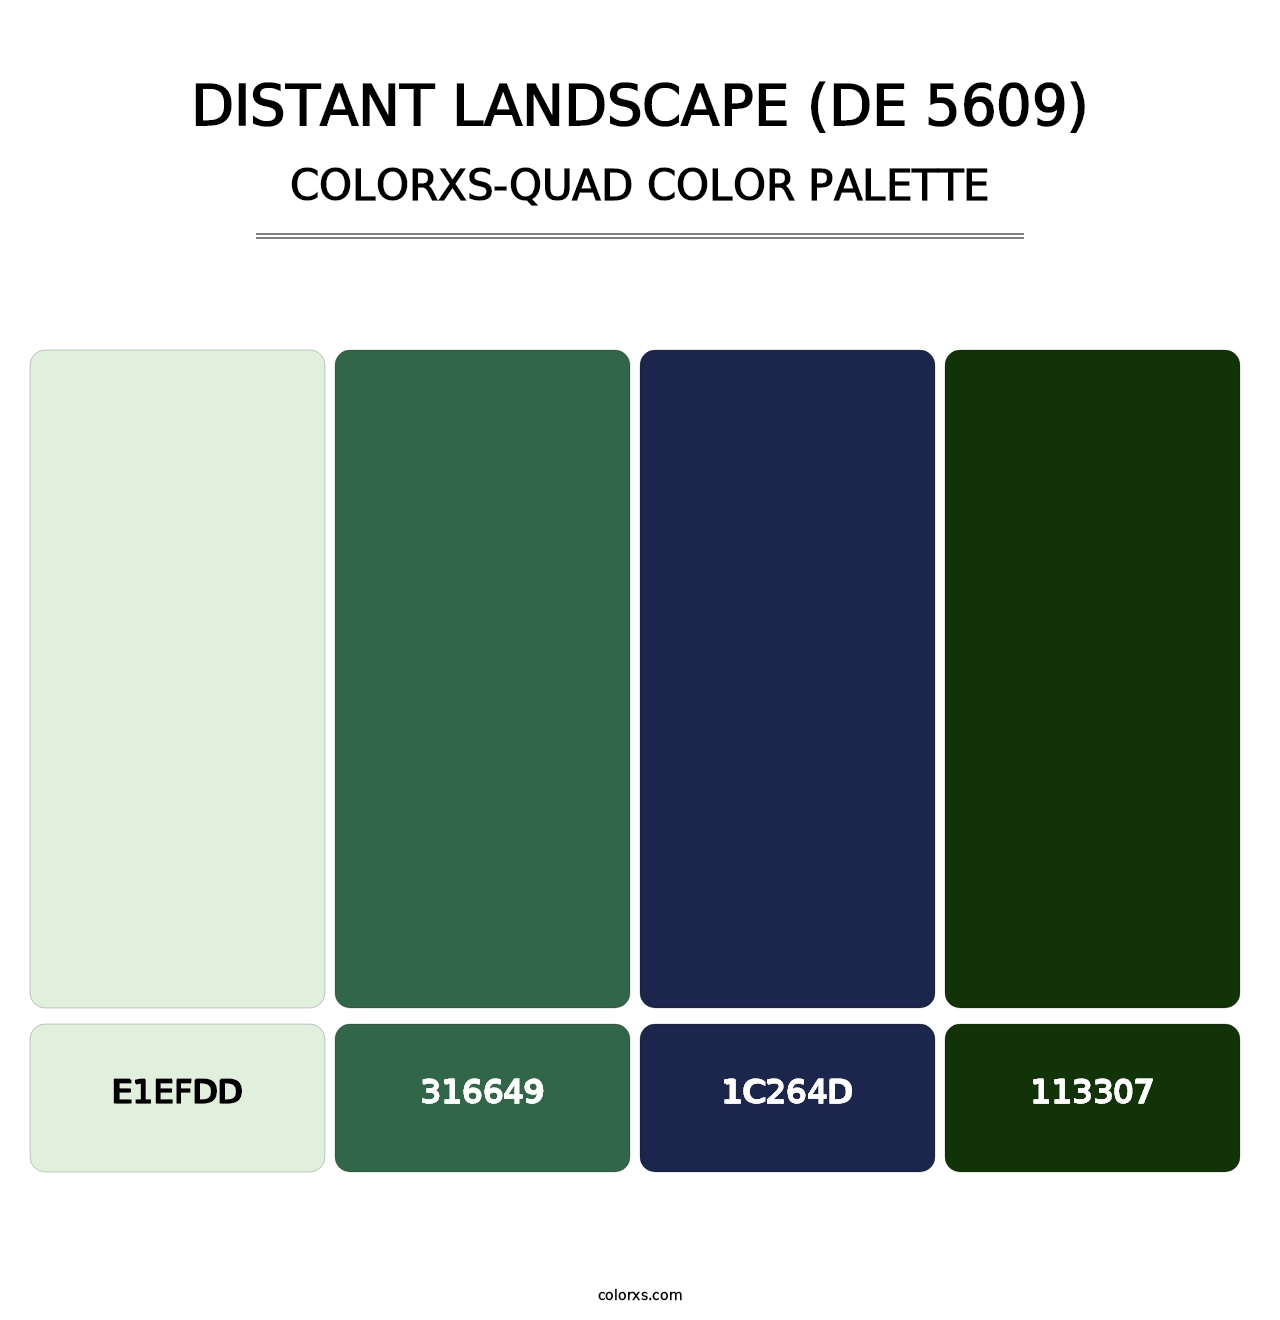 Distant Landscape (DE 5609) - Colorxs Quad Palette